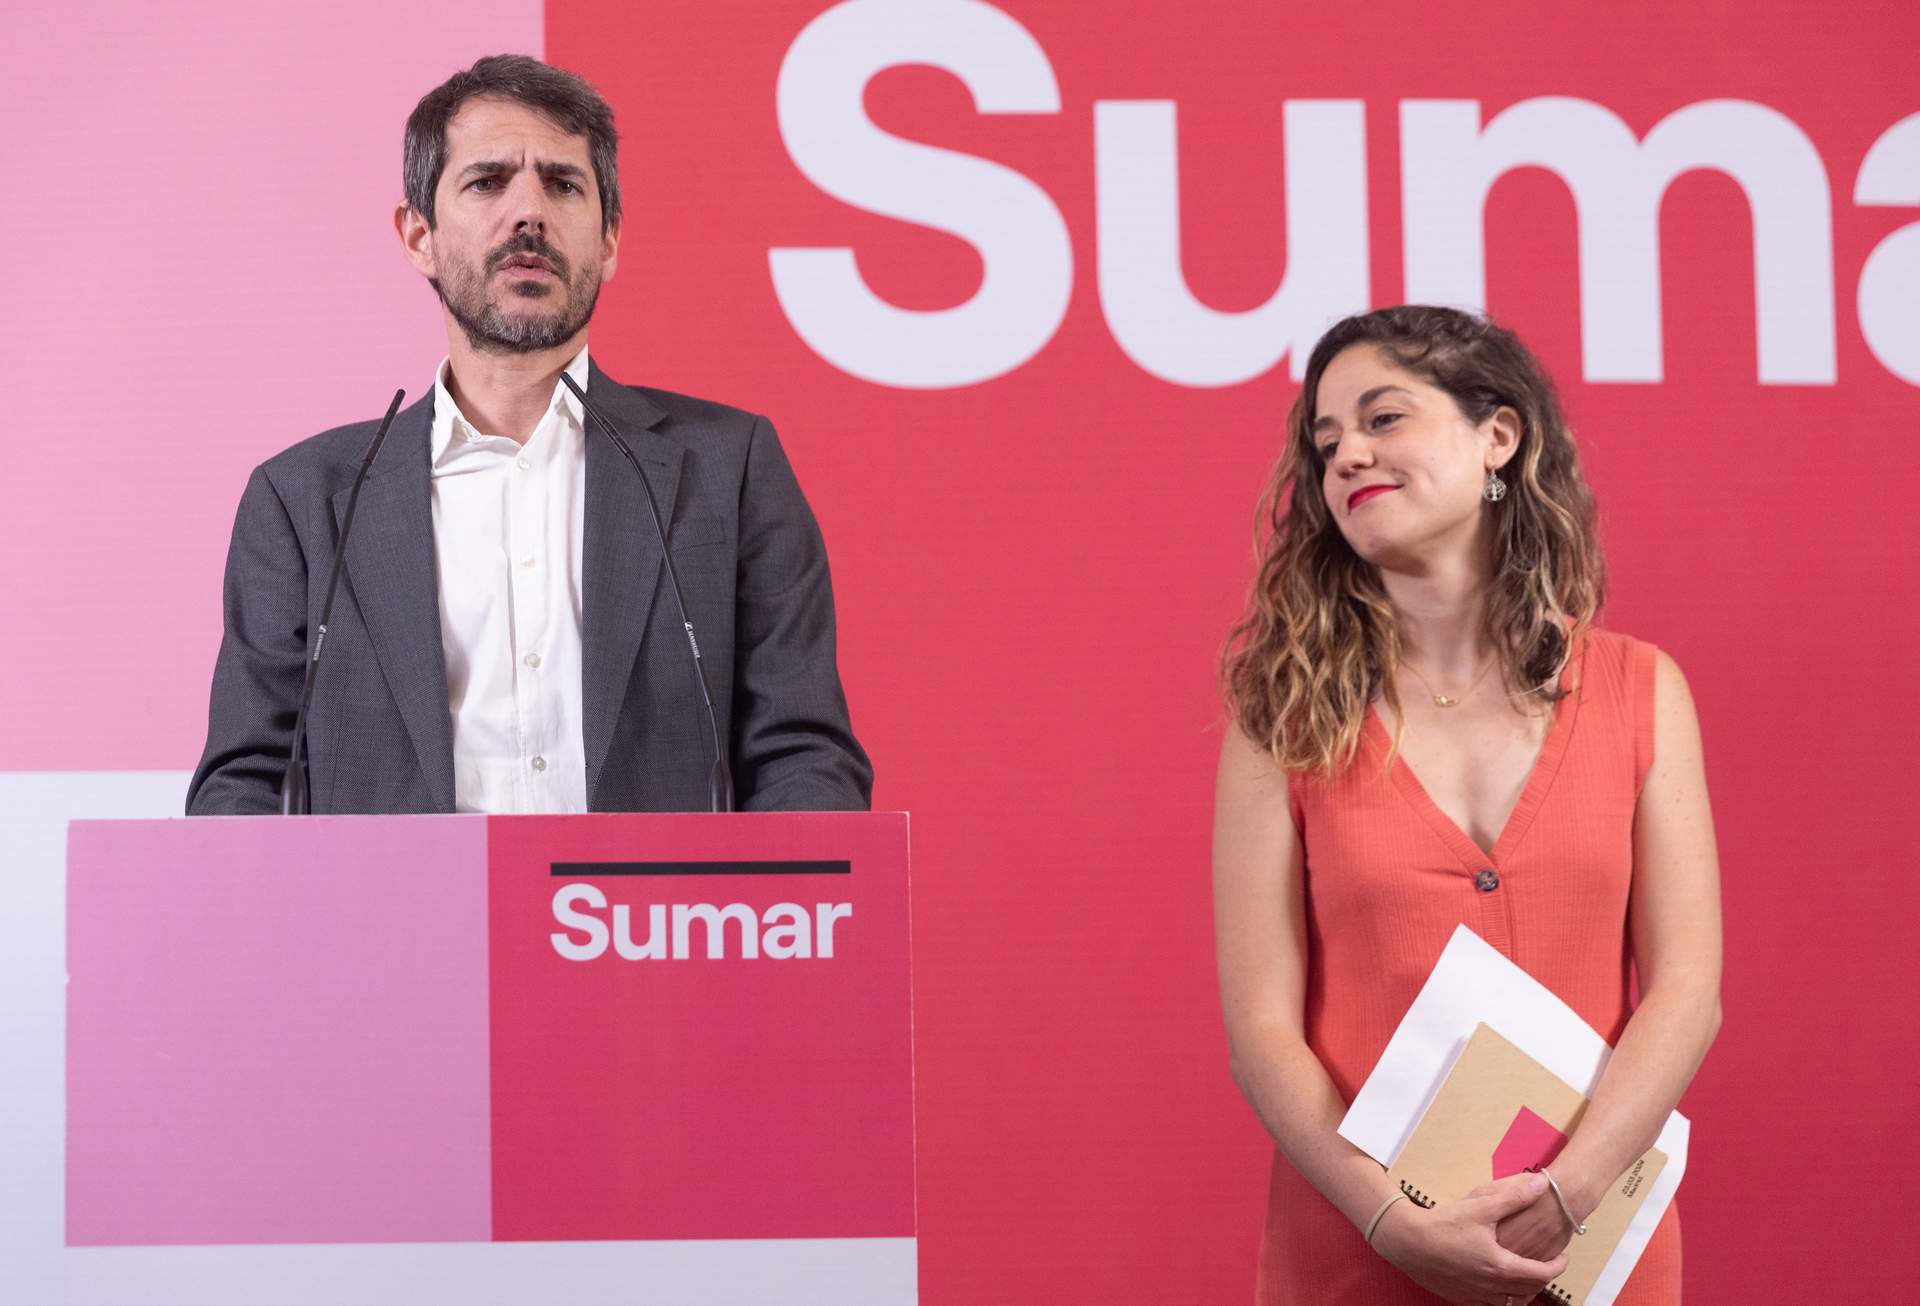 Cargar máis
El portavoz de Sumar, Ernest Urtasun y la secretaria de Organización del partido, Lara Hernández, durante una rueda de prensa, en el Espacio Rastro, a 17 de junio de 2024, en Madrid.